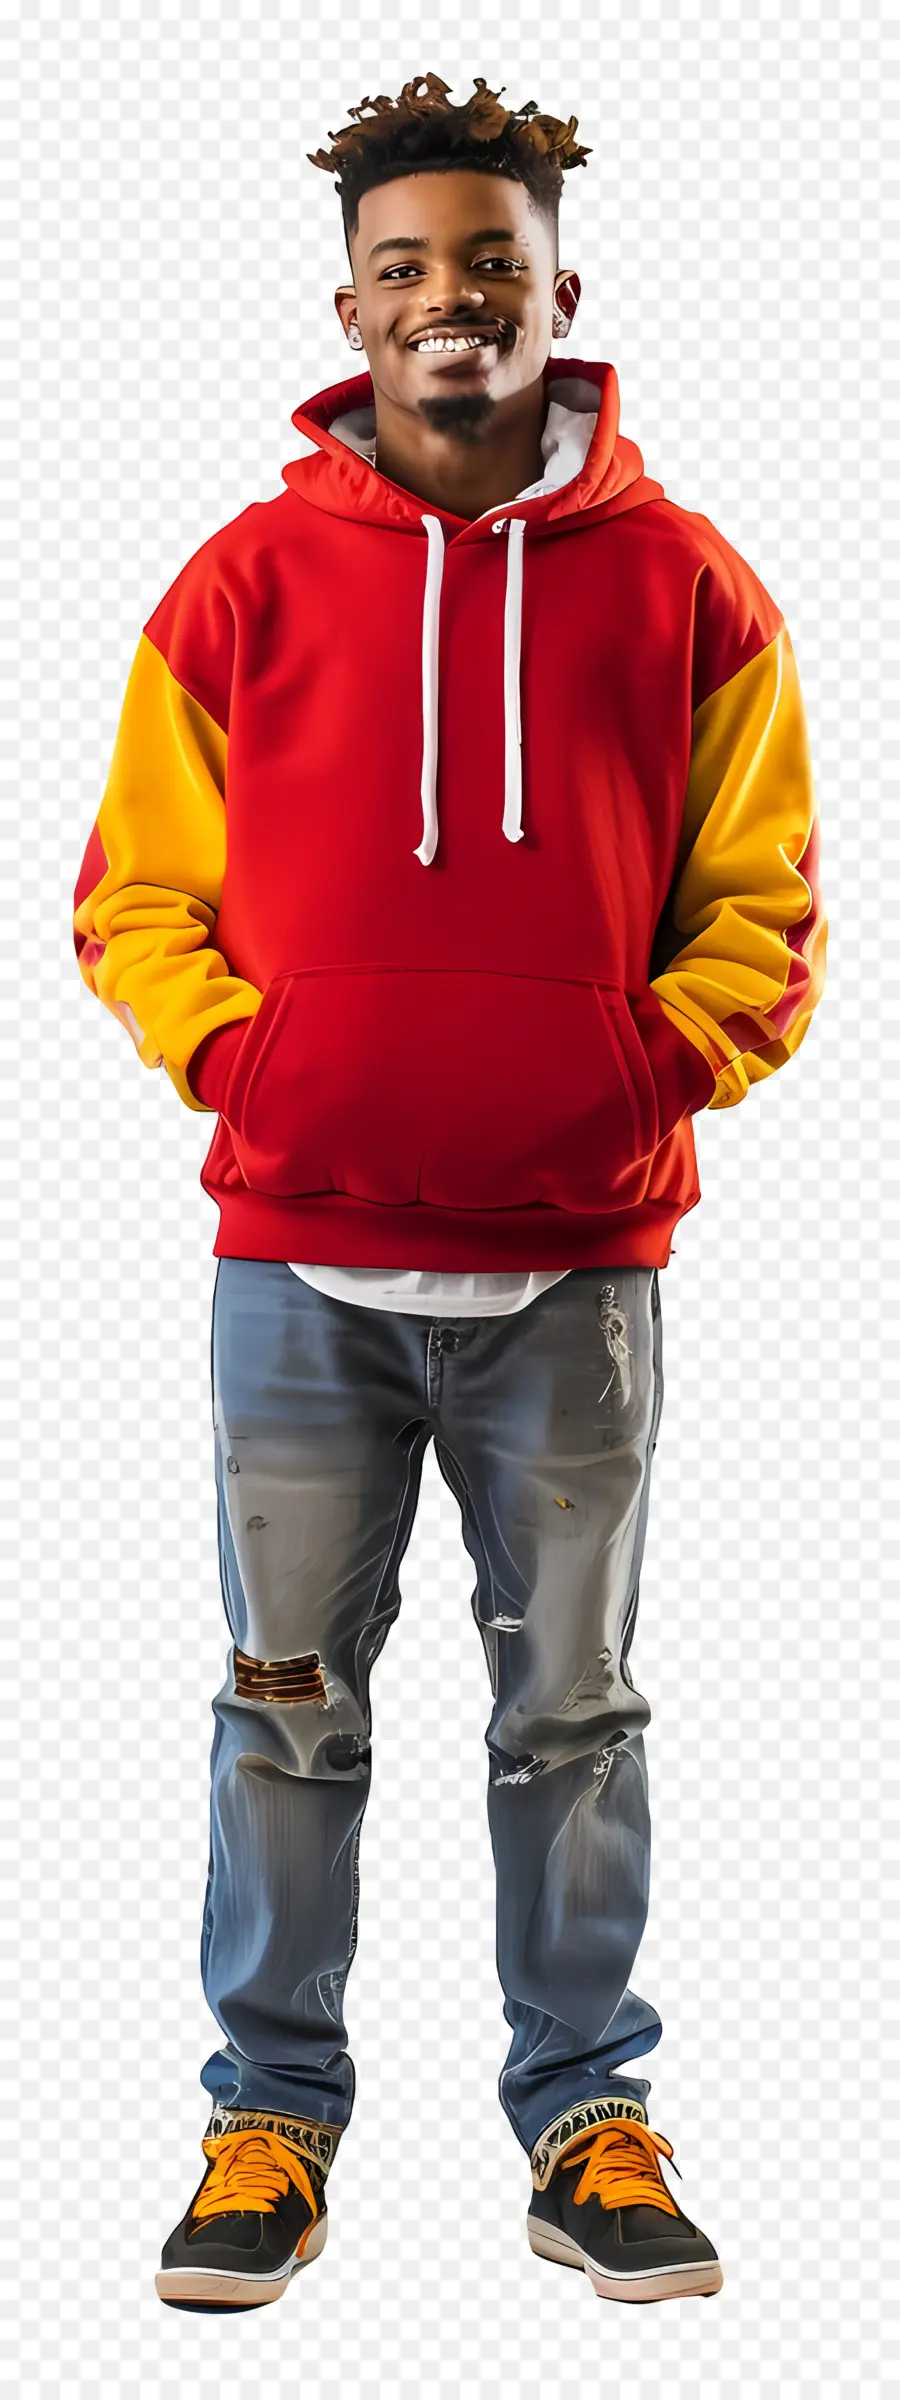 Happy Black Man Red và Yellow Hooded Áo Jeans Sneakers Man With Dreadlocks - Người đàn ông mặc áo hoodie màu đỏ và vàng mỉm cười